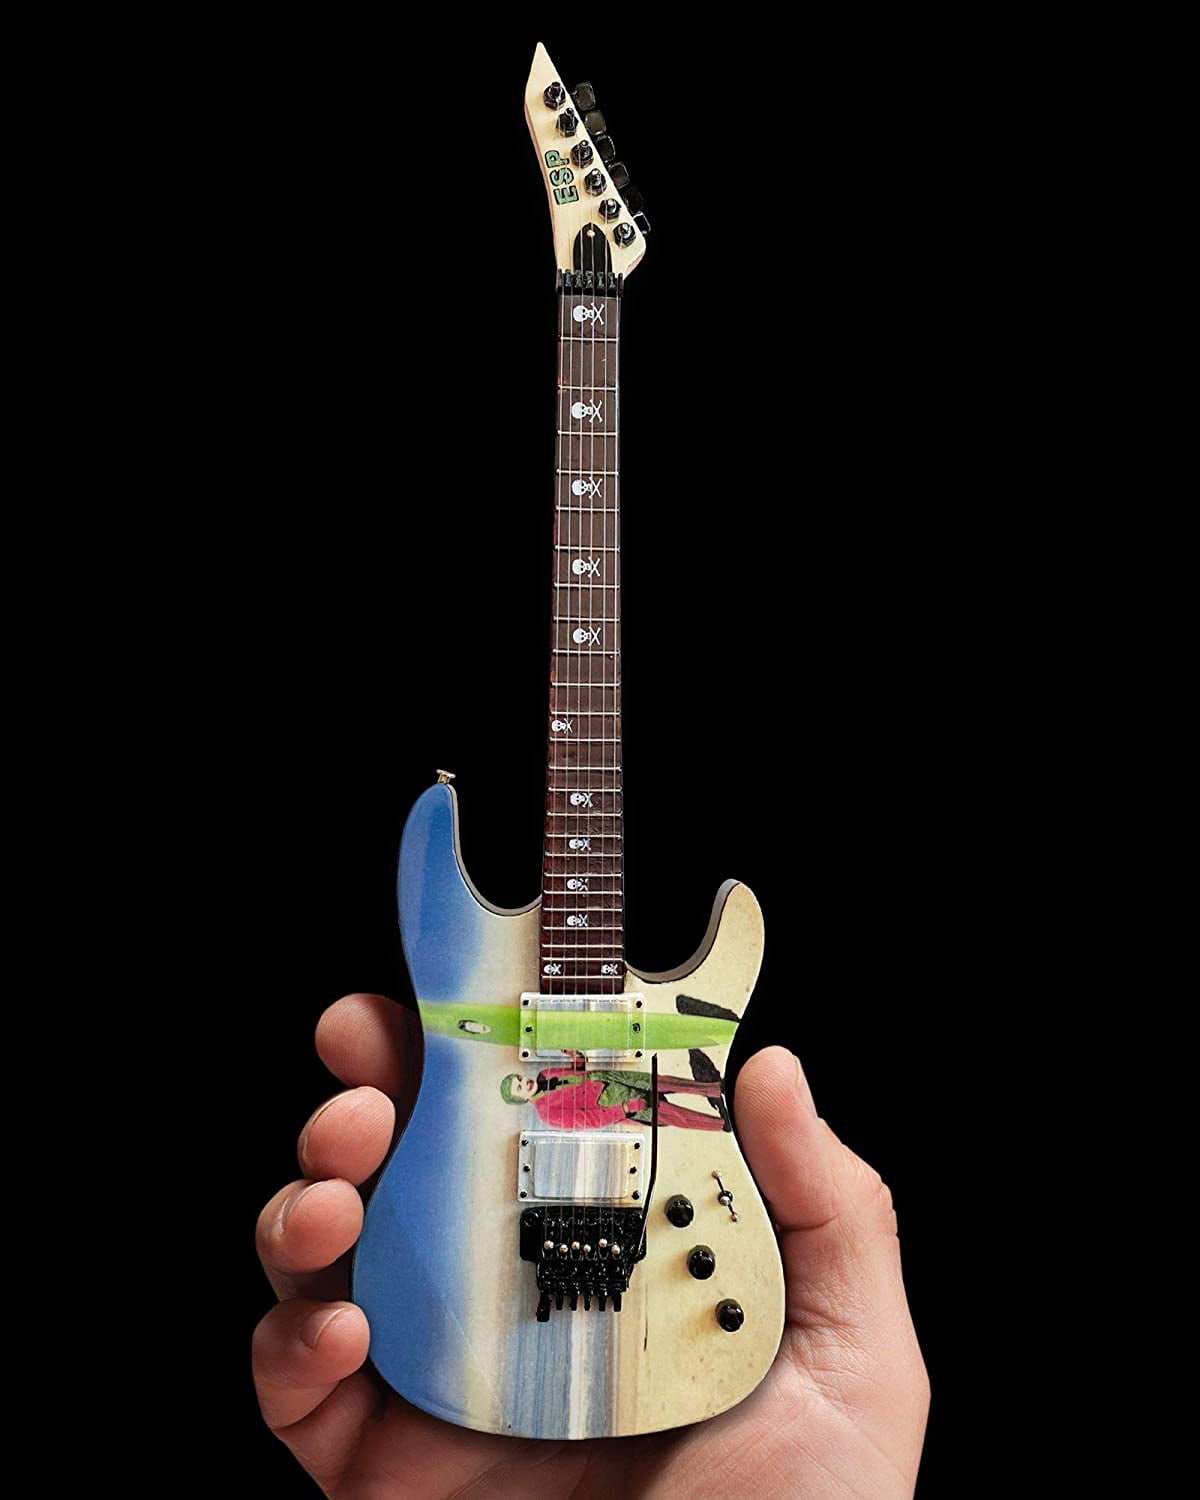 Axe Heaven Metallica Kirk Hammett Joker Surfs Up ESP Miniature Guitar Replica 